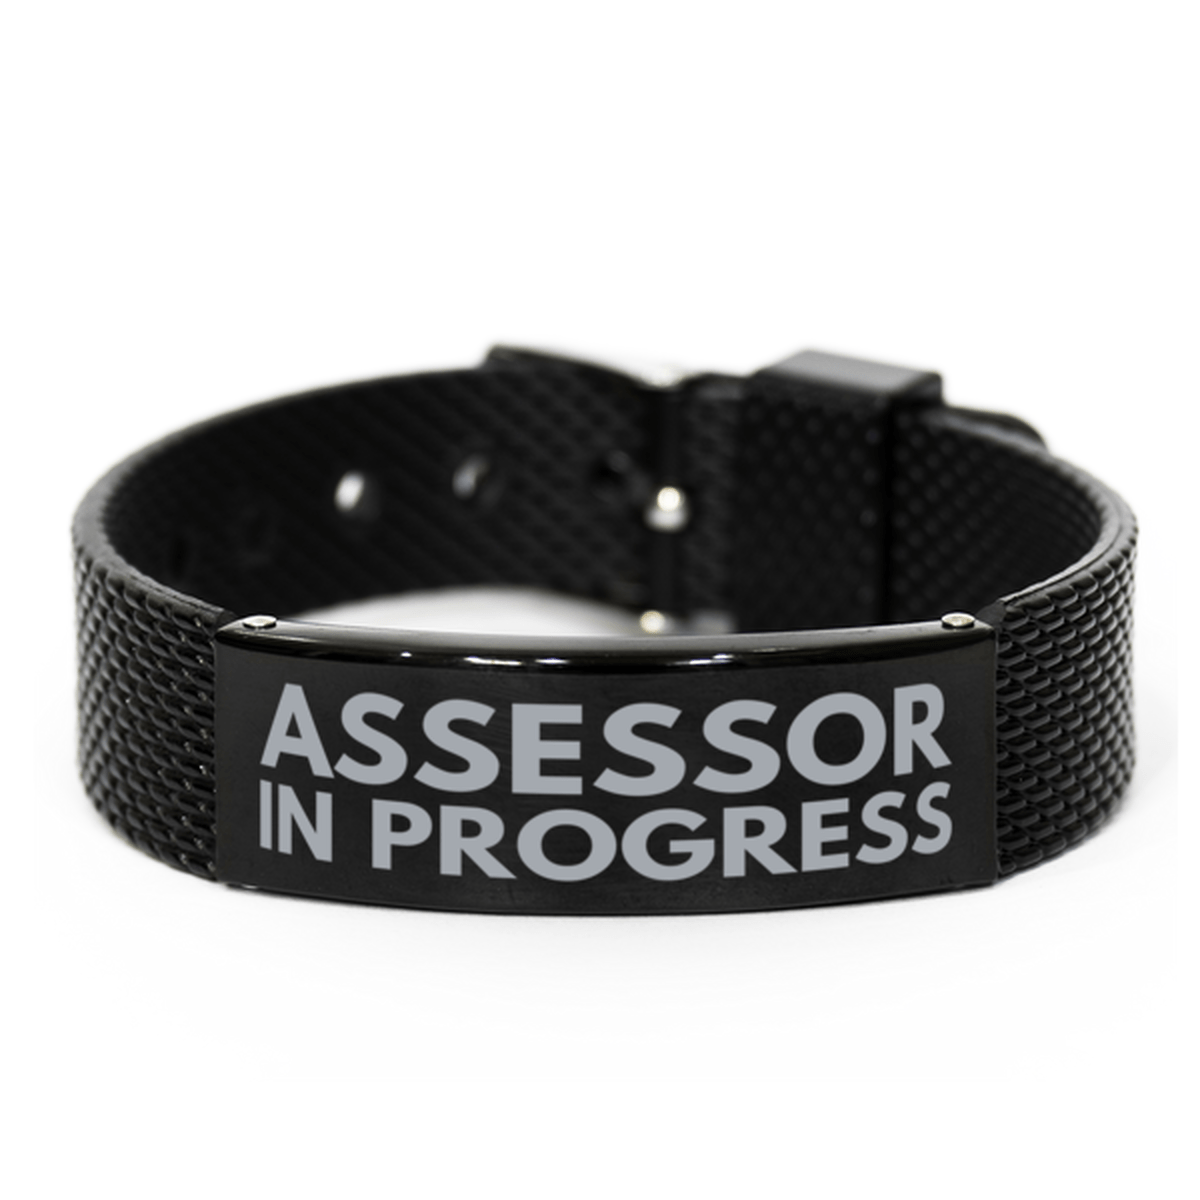 Inspirational Assessor Black Shark Mesh Bracelet, Assessor In Progress, Best Graduation Gifts for Students